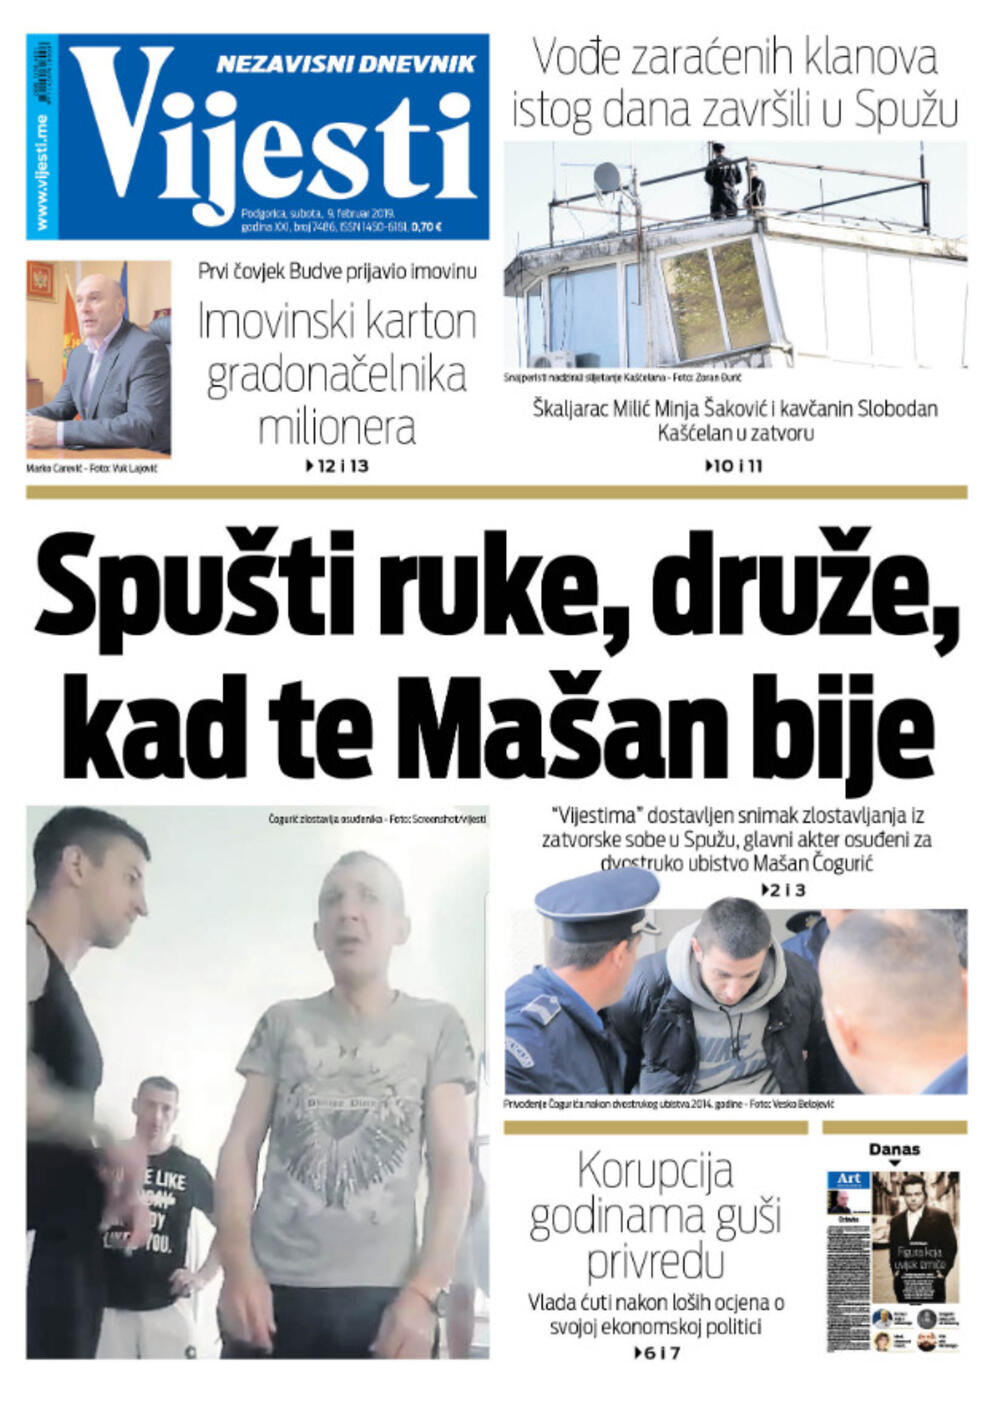 Naslovna strana "Vijesti" za 9. februar